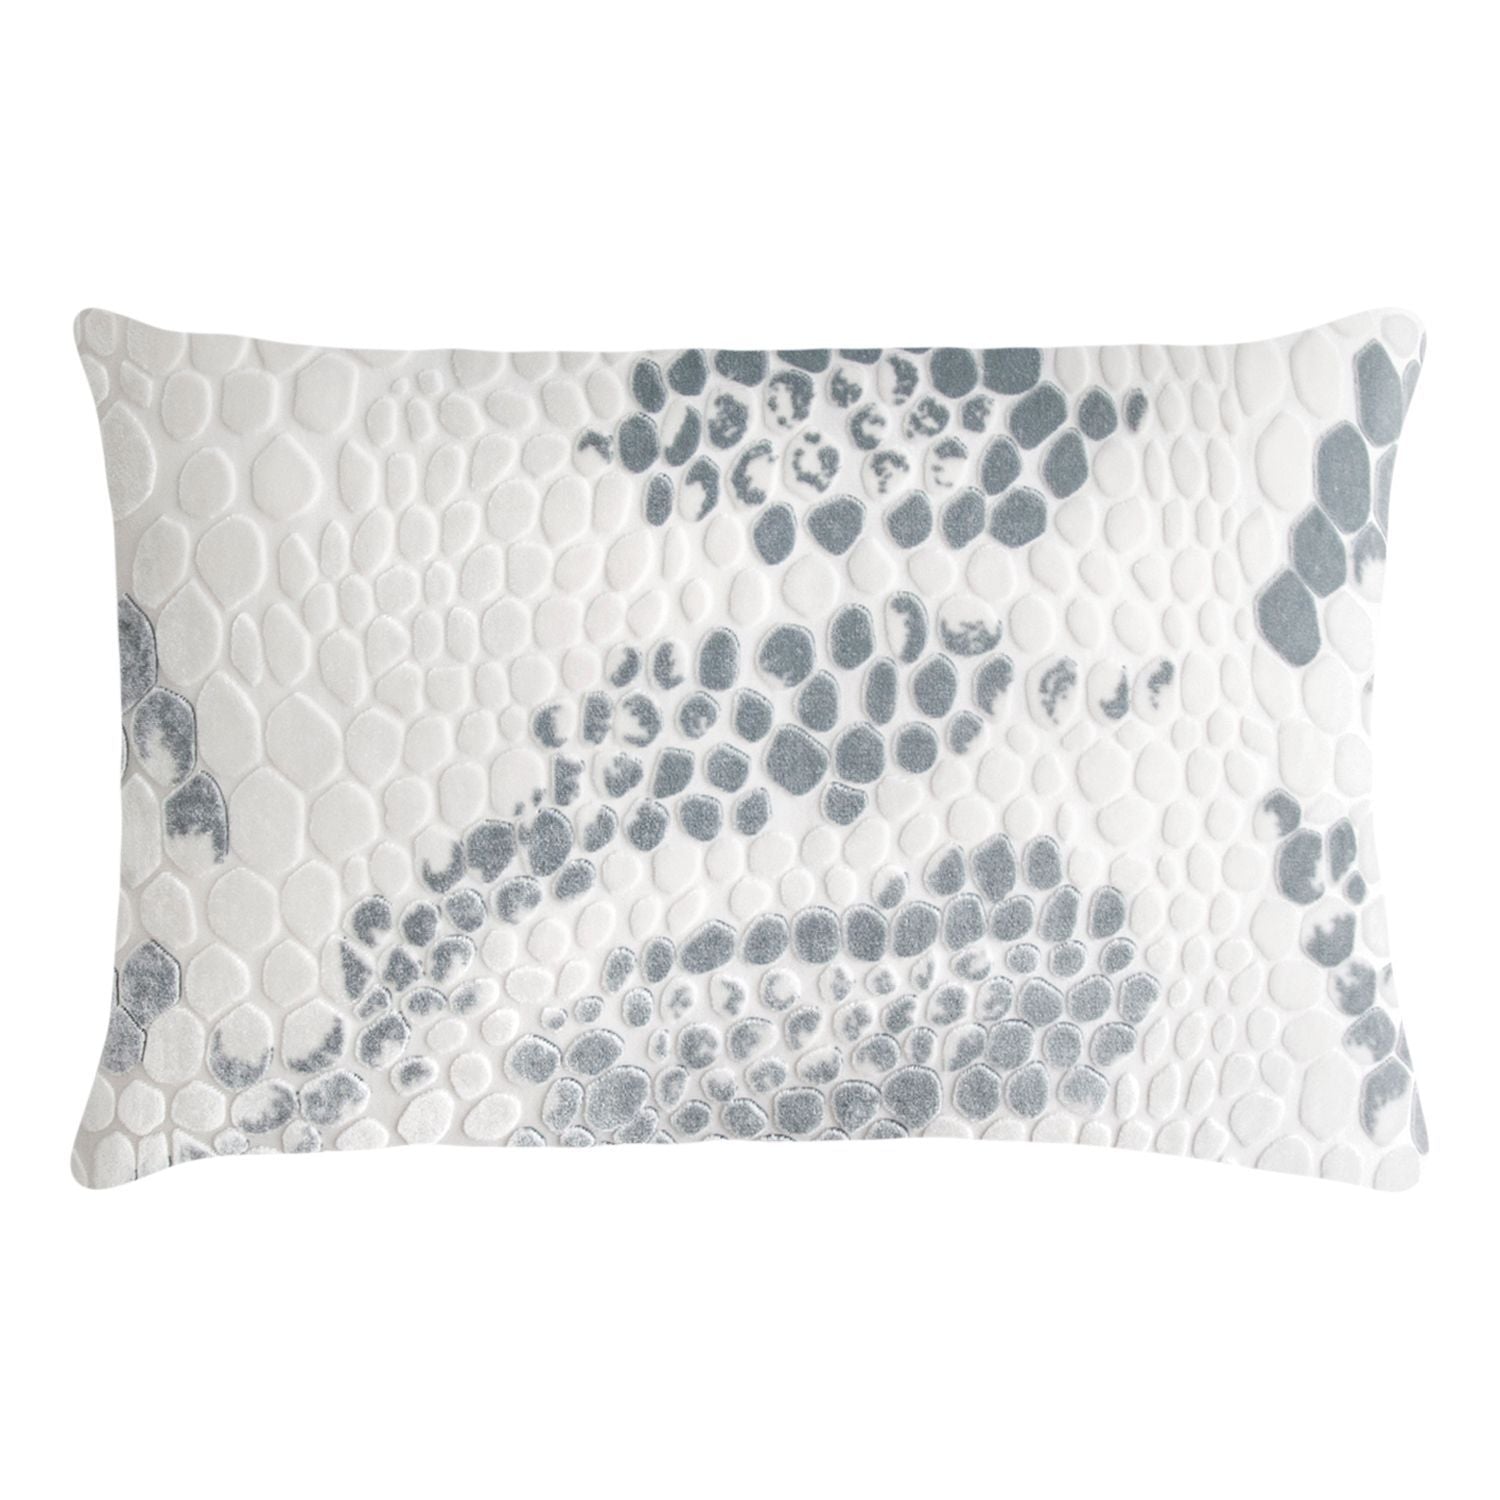 White Snakeskin Velvet Pillows by Kevin O'Brien Studio